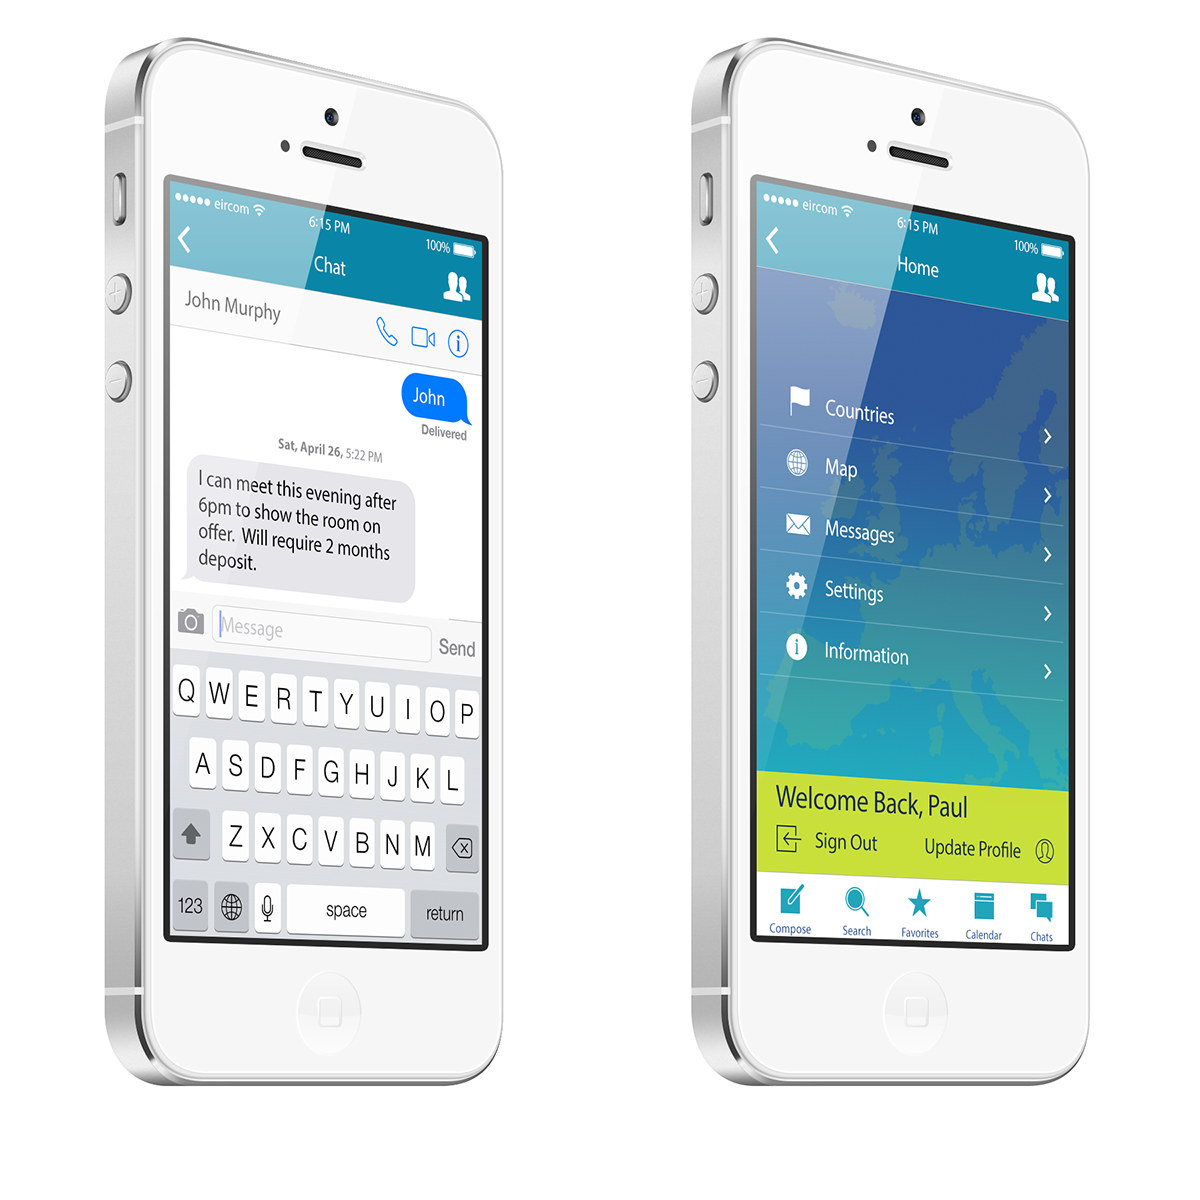 ios7 mobile design user interface UI ux apps ios iphone UX design ui design